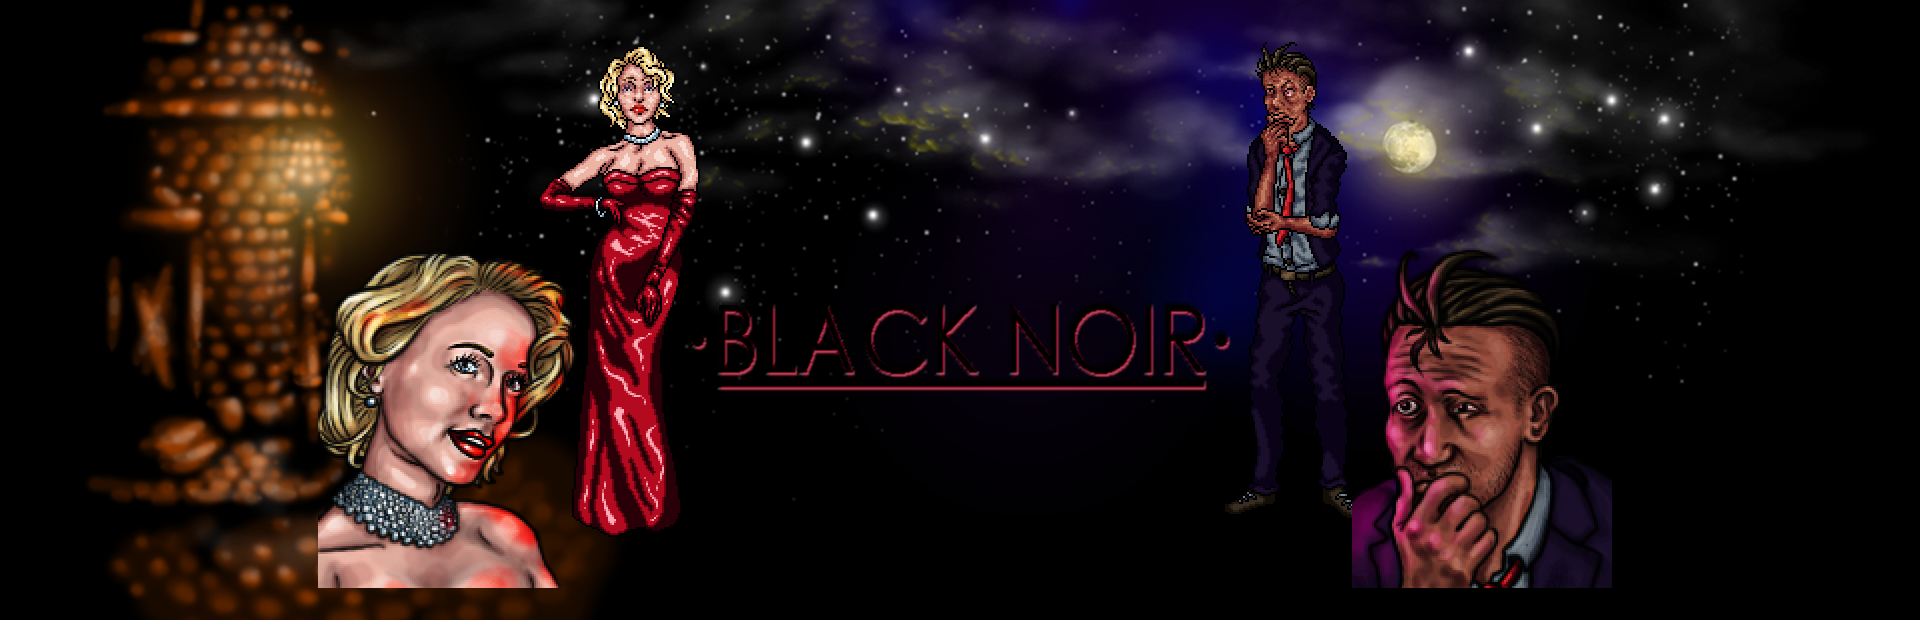 Black Noir Demo